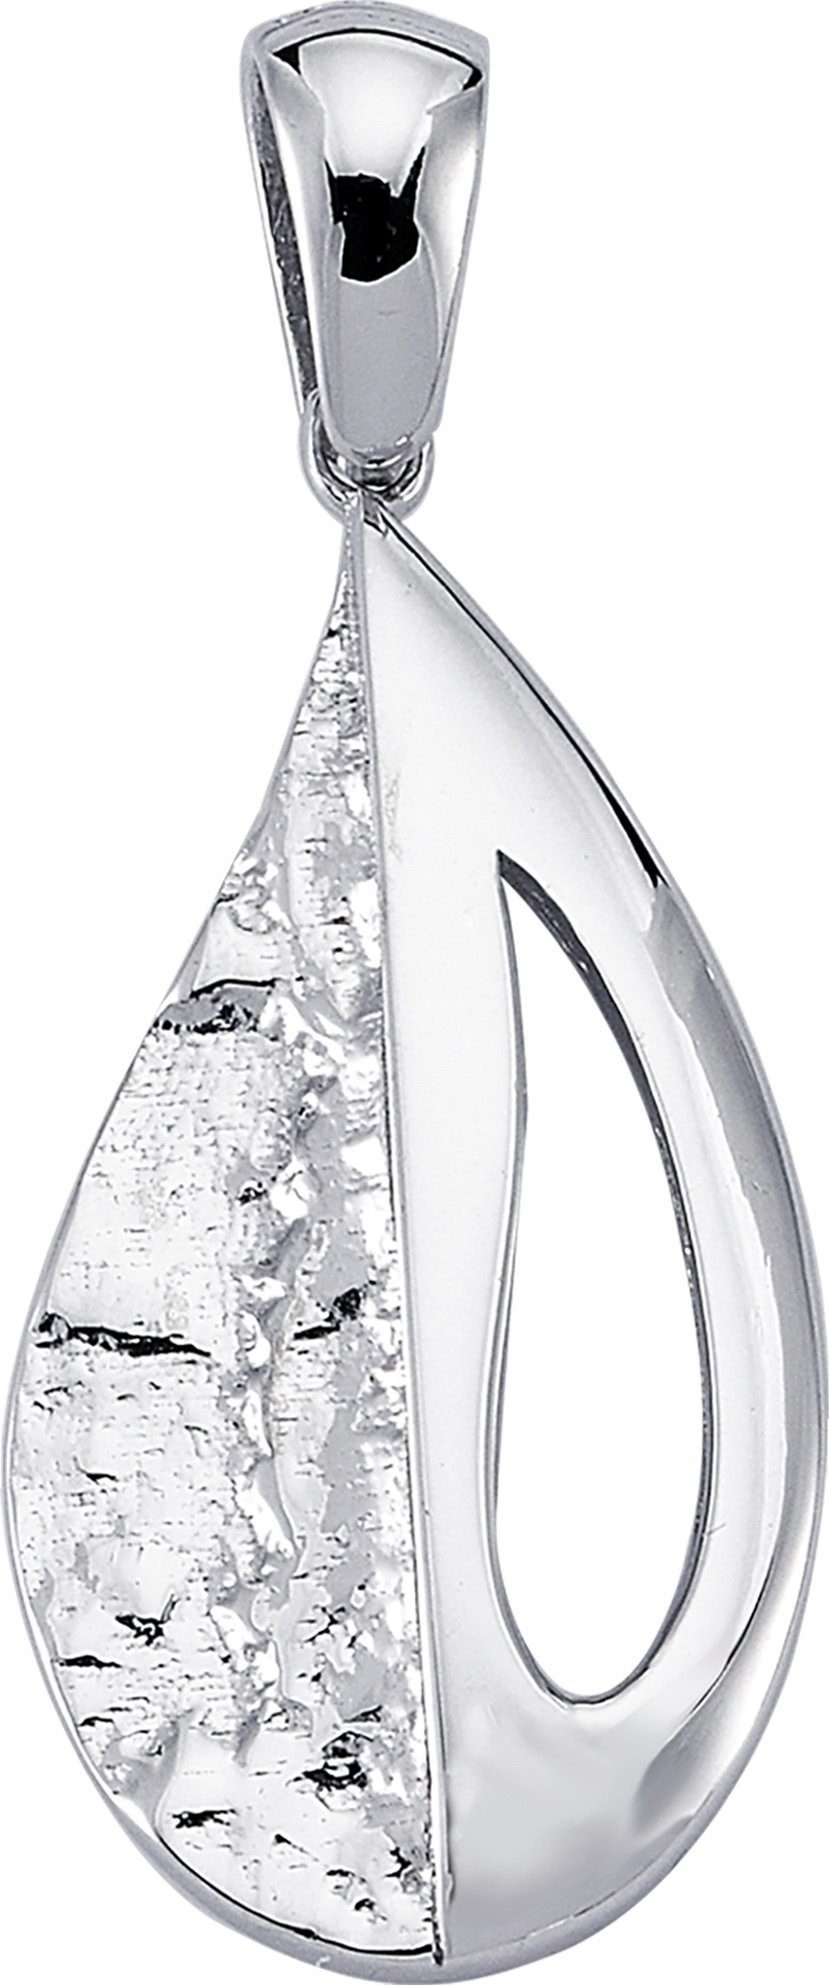 Balia Kettenanhänger Balia Damen Kettenanhänger Silber, Kettenanhänger (Drops) ca. 3,3cm, 925 Sterling Silber | Kettenanhänger